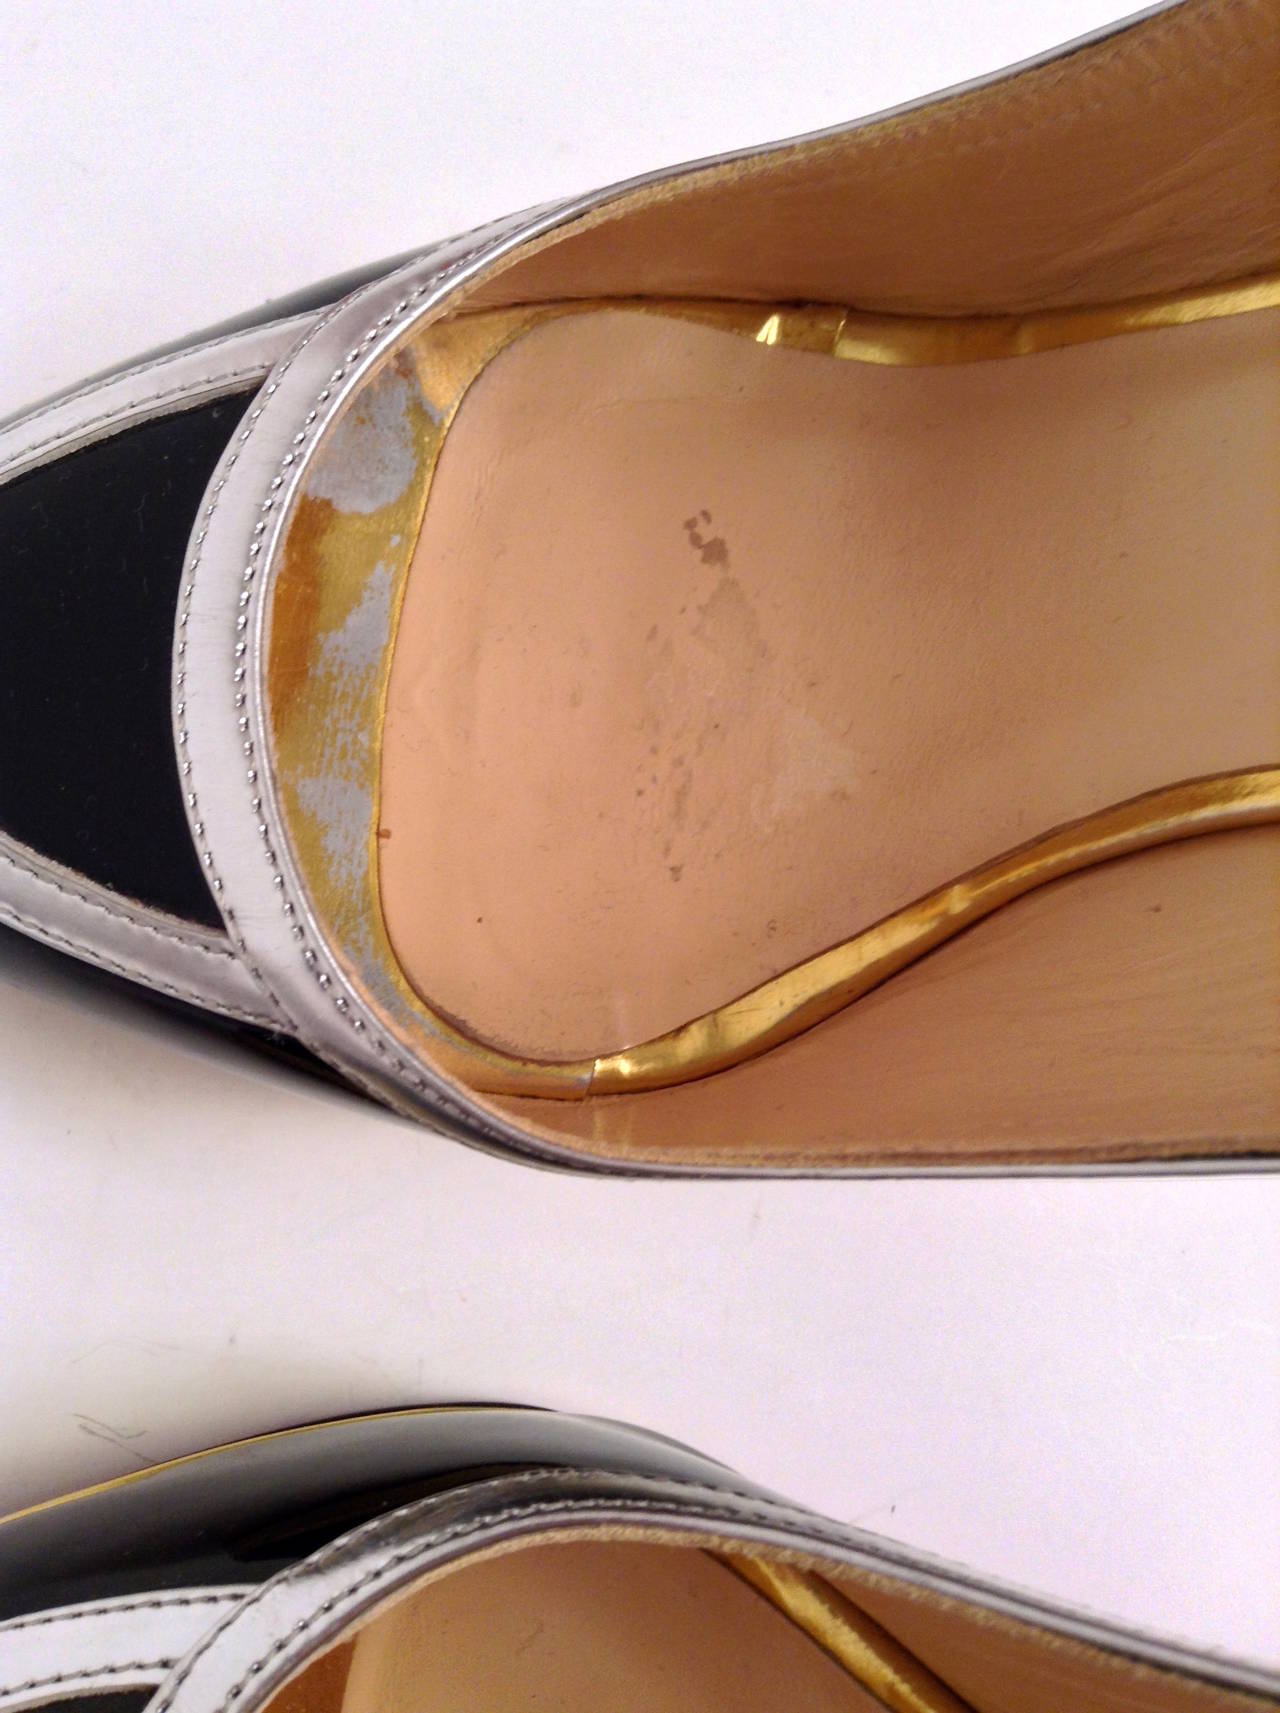 Christian Louboutin Black Patent Peep toe Sling Back Size 39/8 4